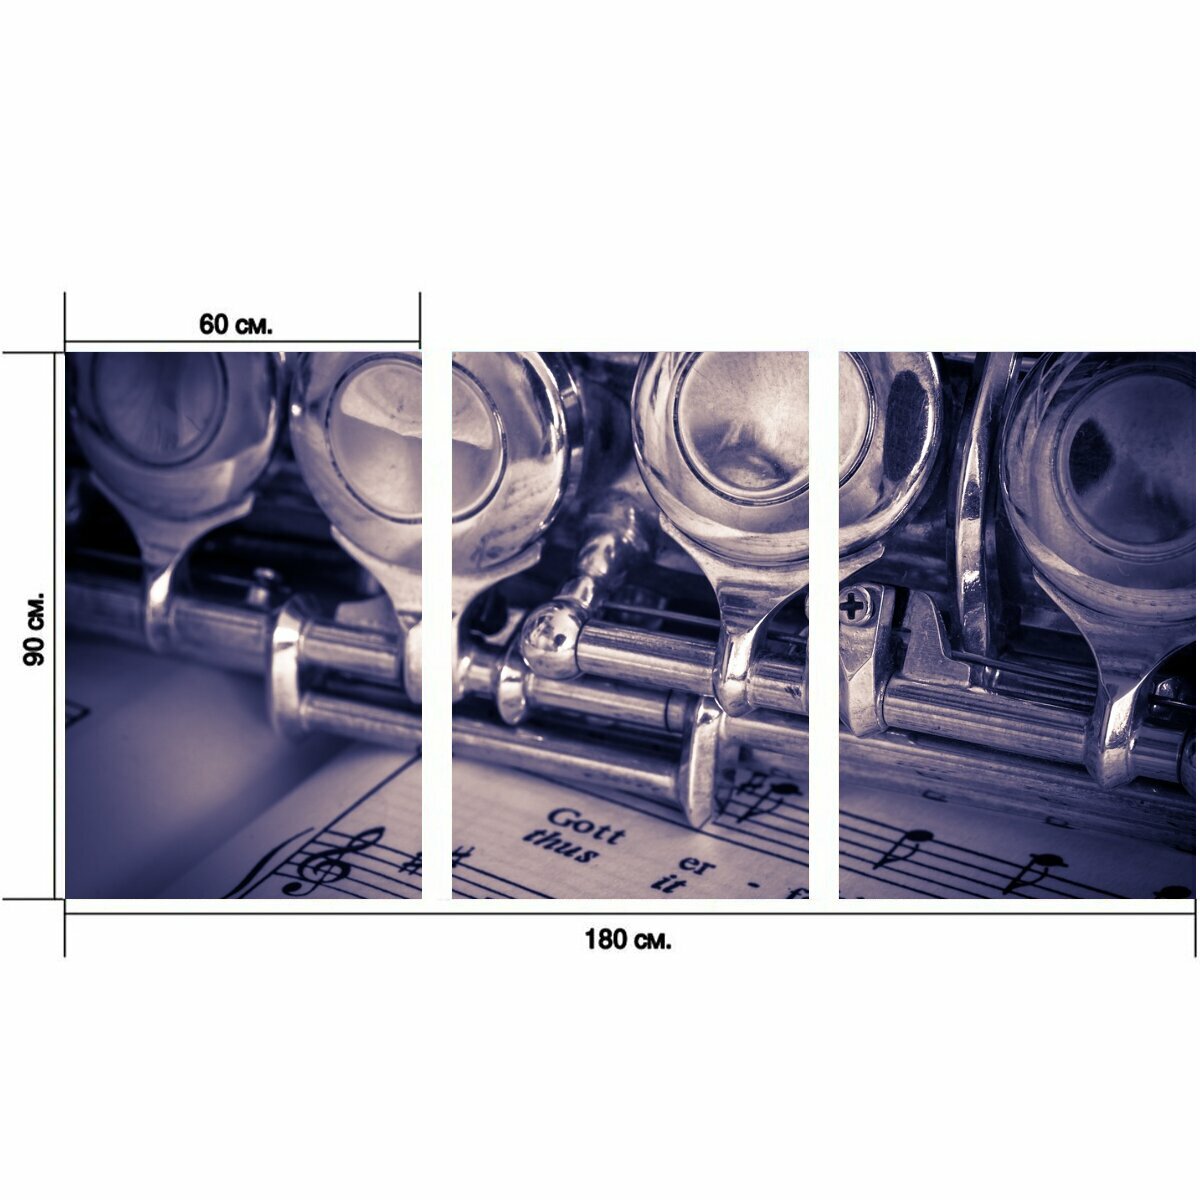 Модульный постер "Флейта, музыкальный инструмент, серебряное покрытие" 180 x 90 см. для интерьера